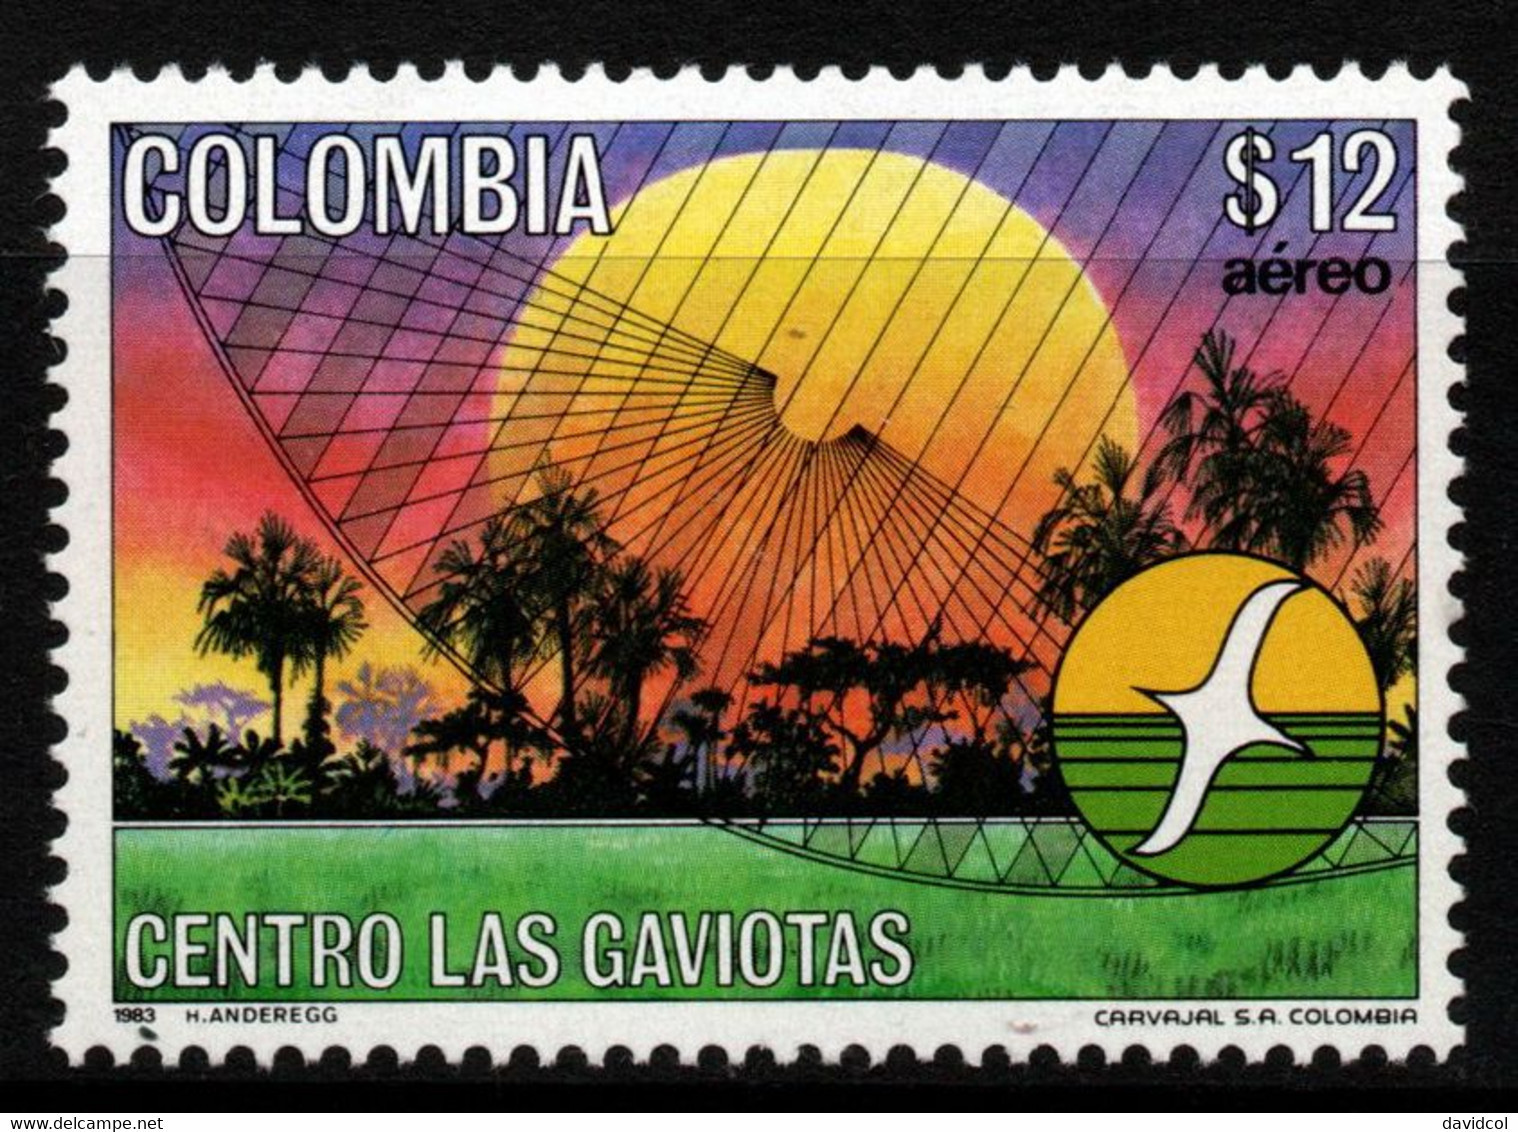 03- KOLUMBIEN - 1983- MI#:1611- MNH- “LAS GAVIOTAS” CENTER - Kolumbien